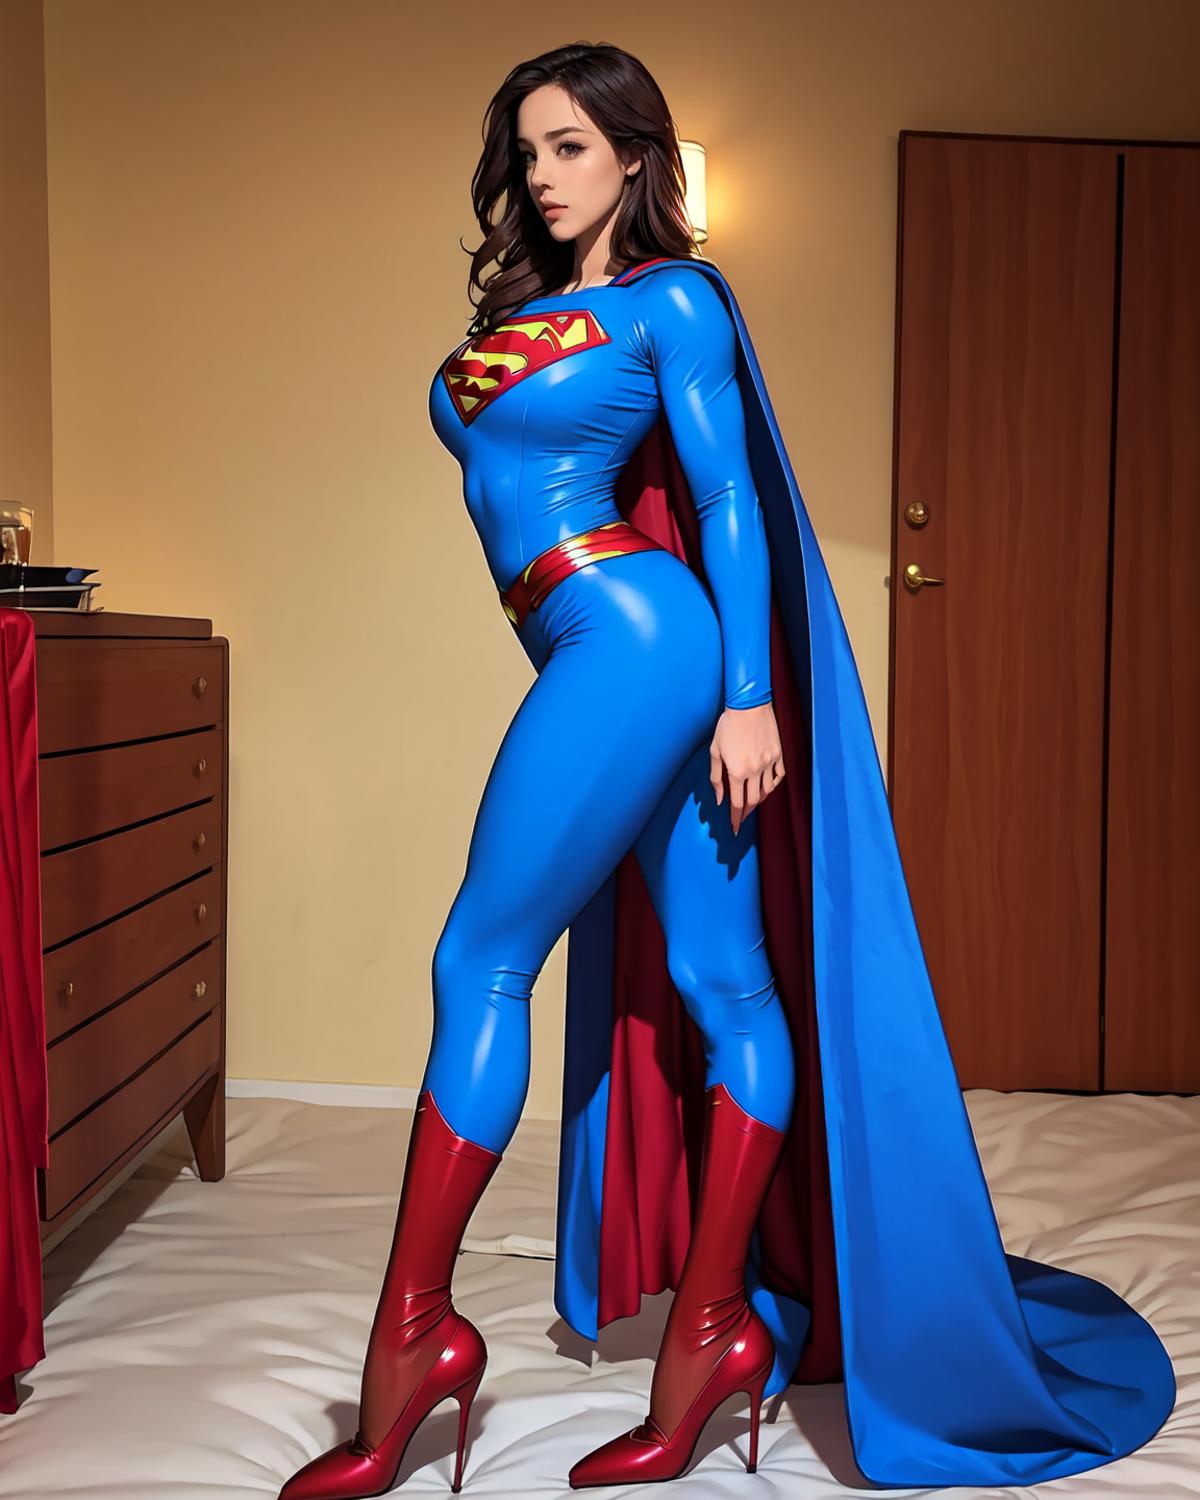 超人superman CLOTHING image by MrHong